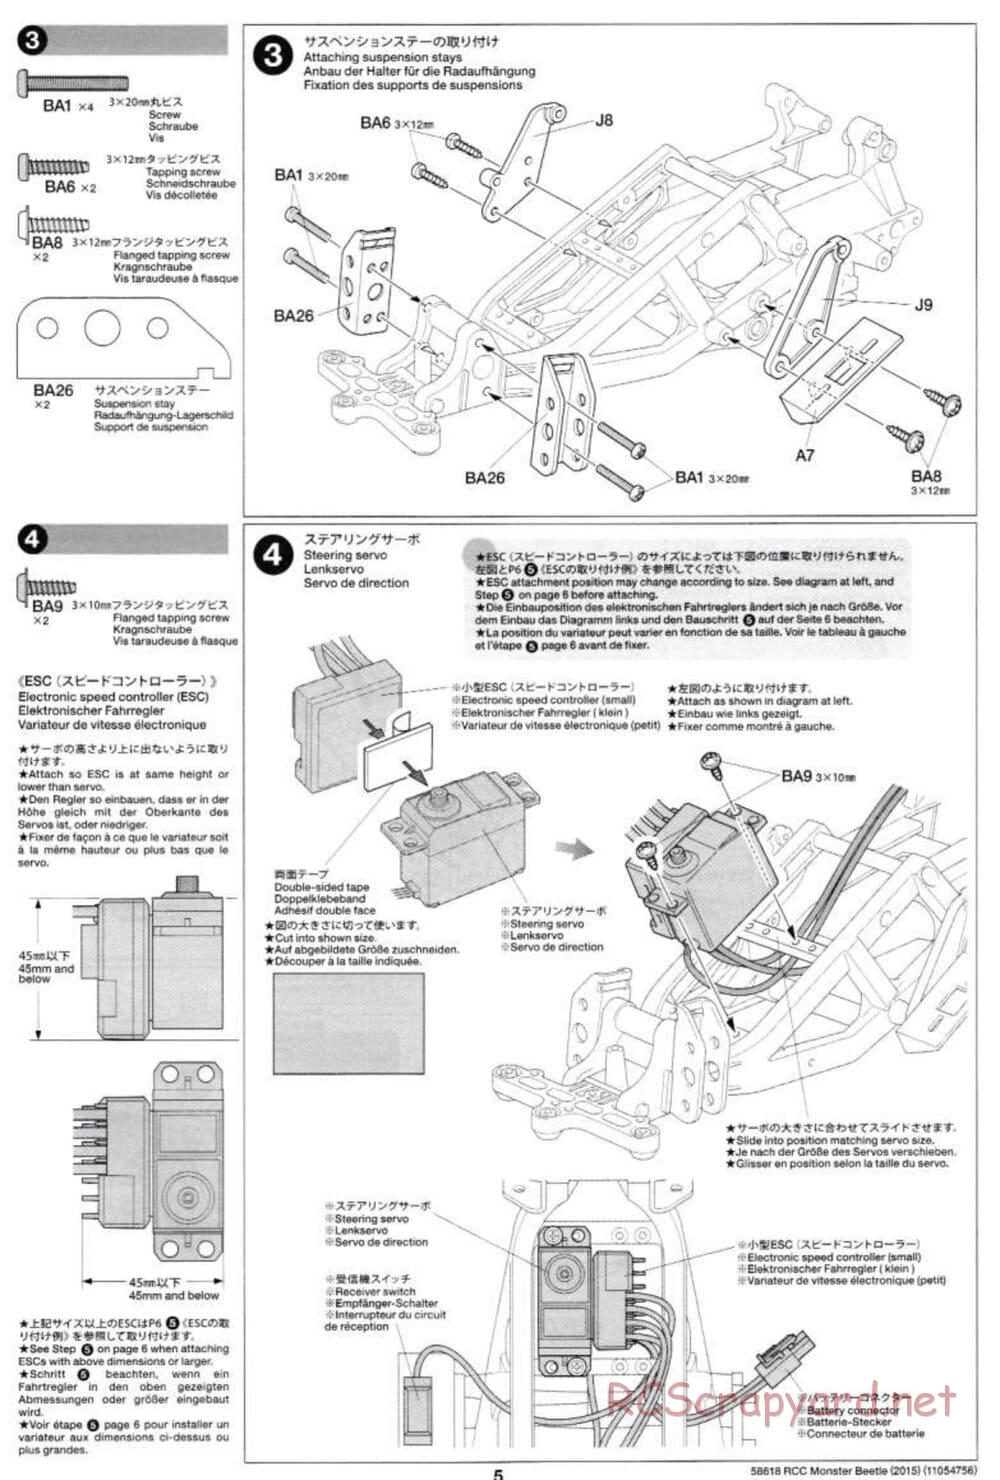 Tamiya - Monster Beetle 2015 - ORV Chassis - Manual - Page 5